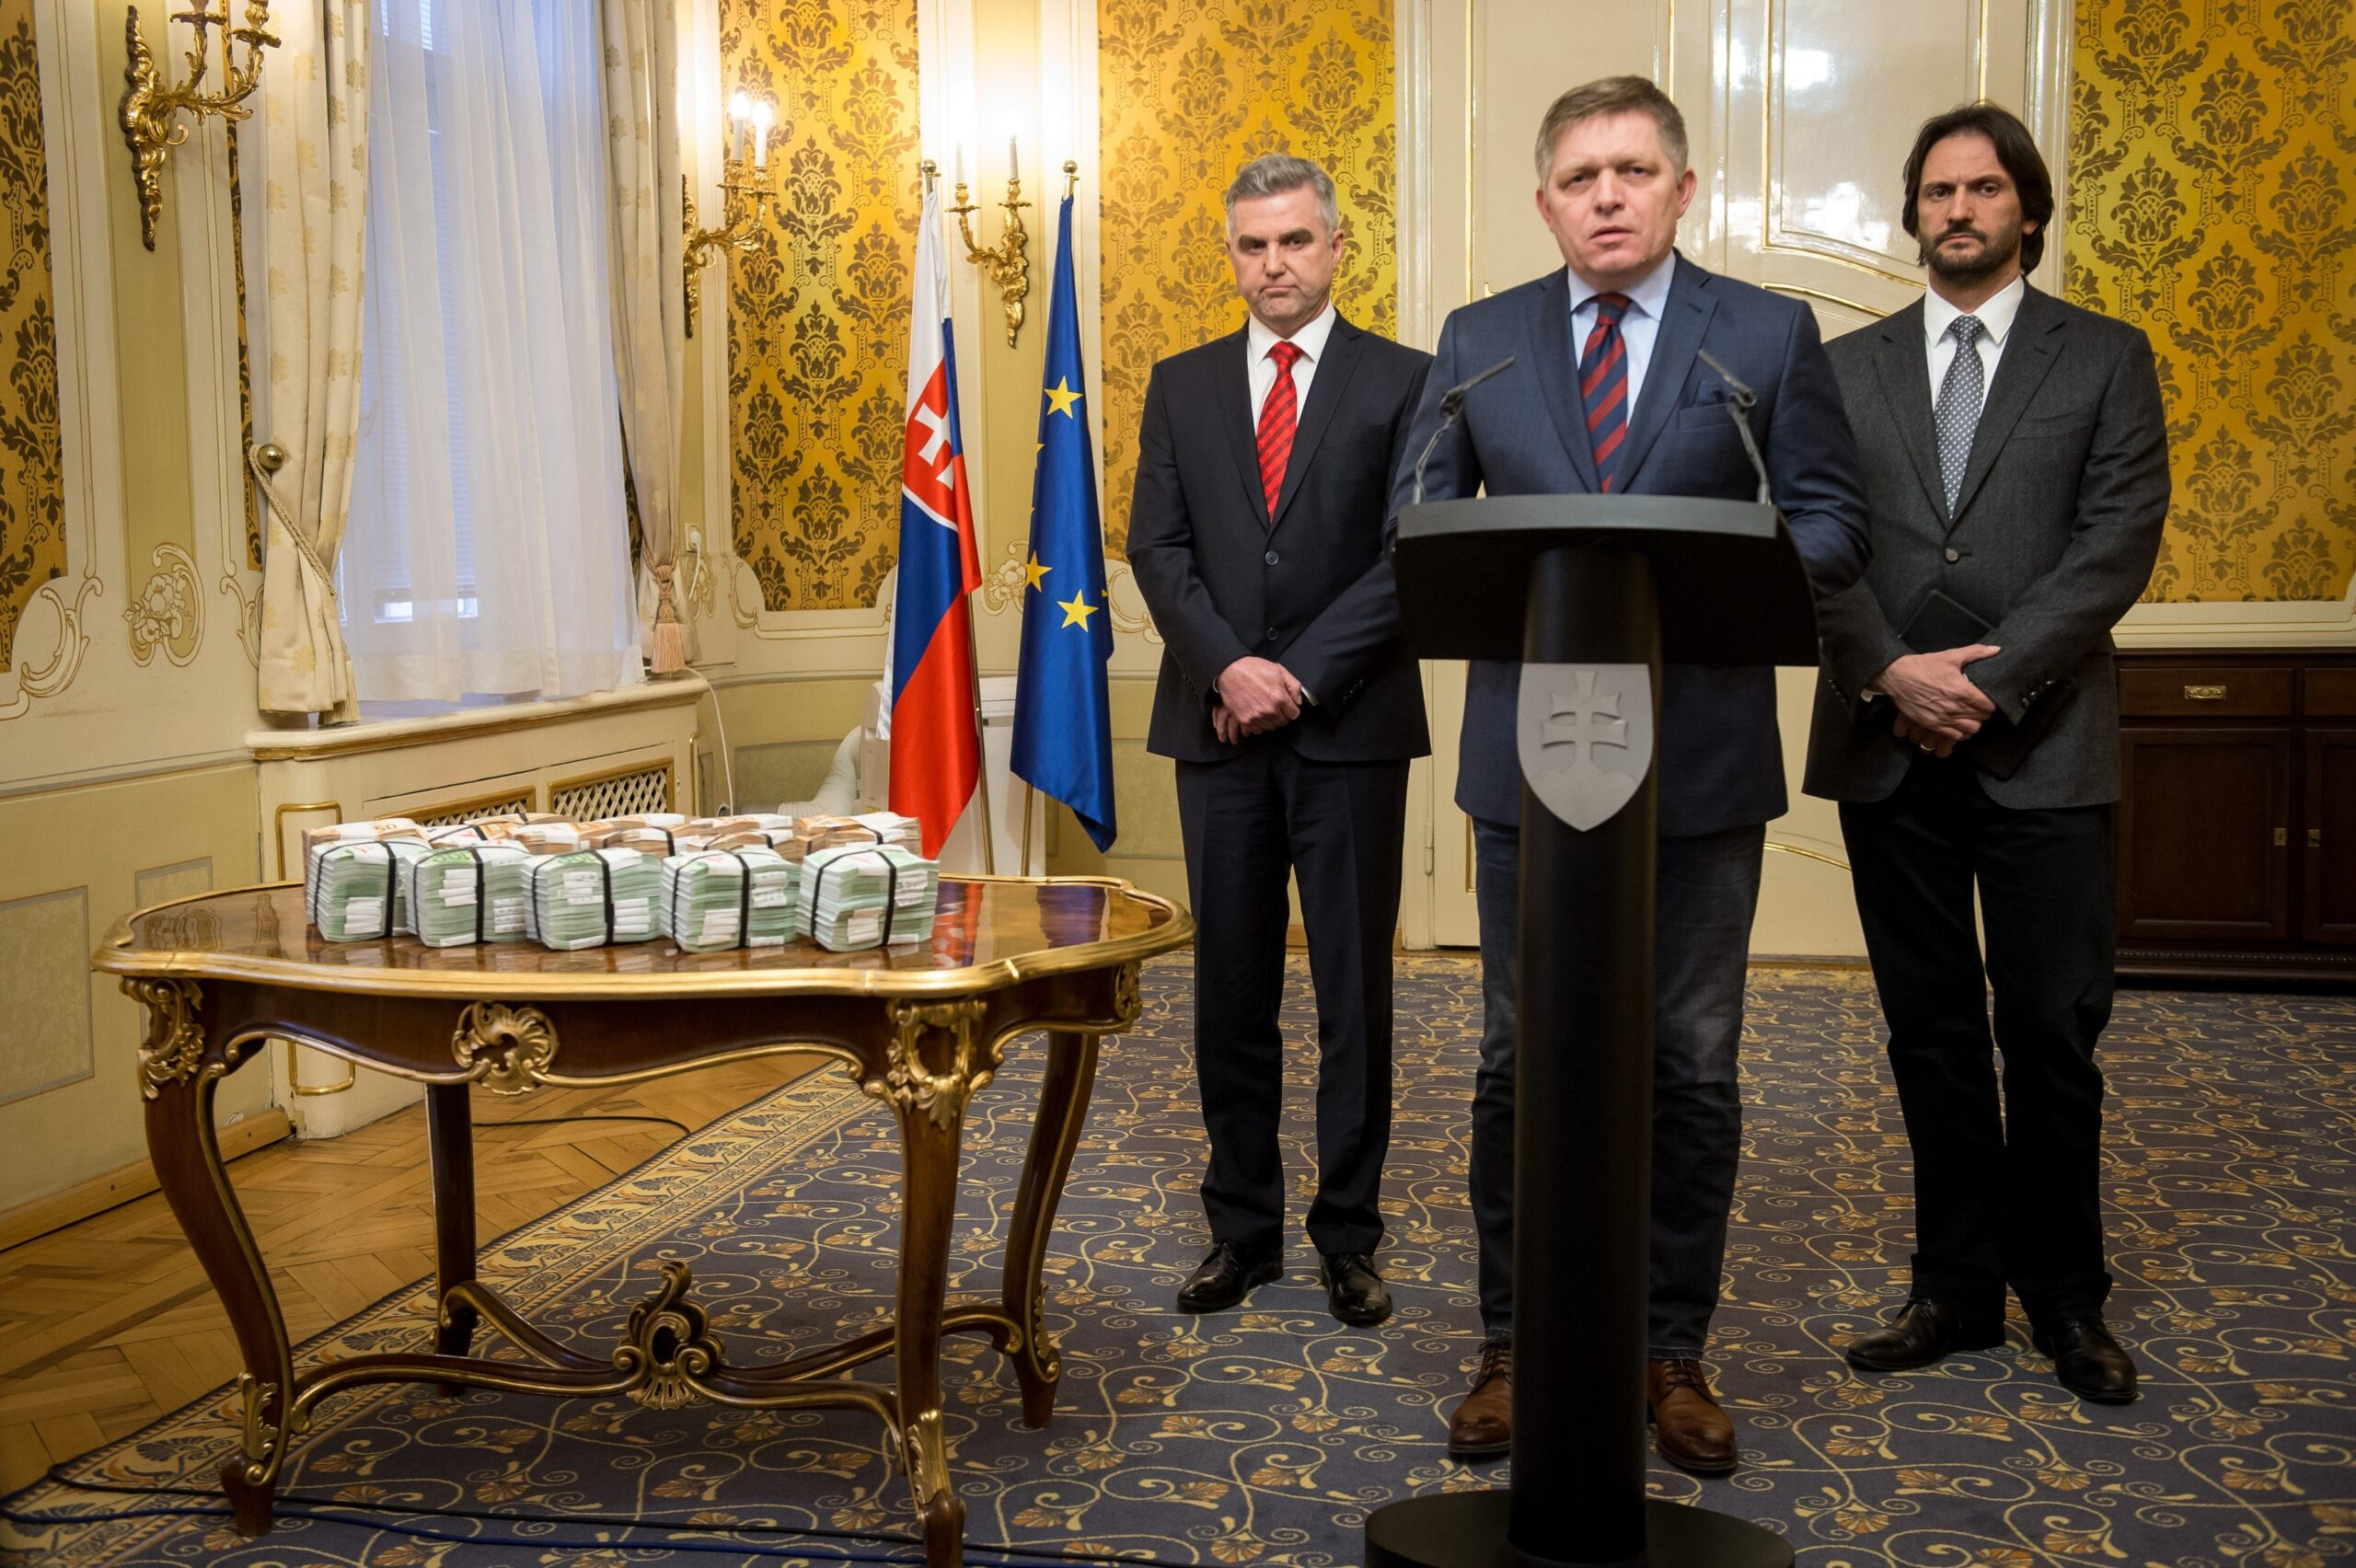 Balíček s milionem eur, policejní prezident Tibor Gašpar, premiér Robert Fico a ministr vnitra Robert Kaliňák. Tisková konference slovenského premiéra, Bratislava, 27. února 2018.